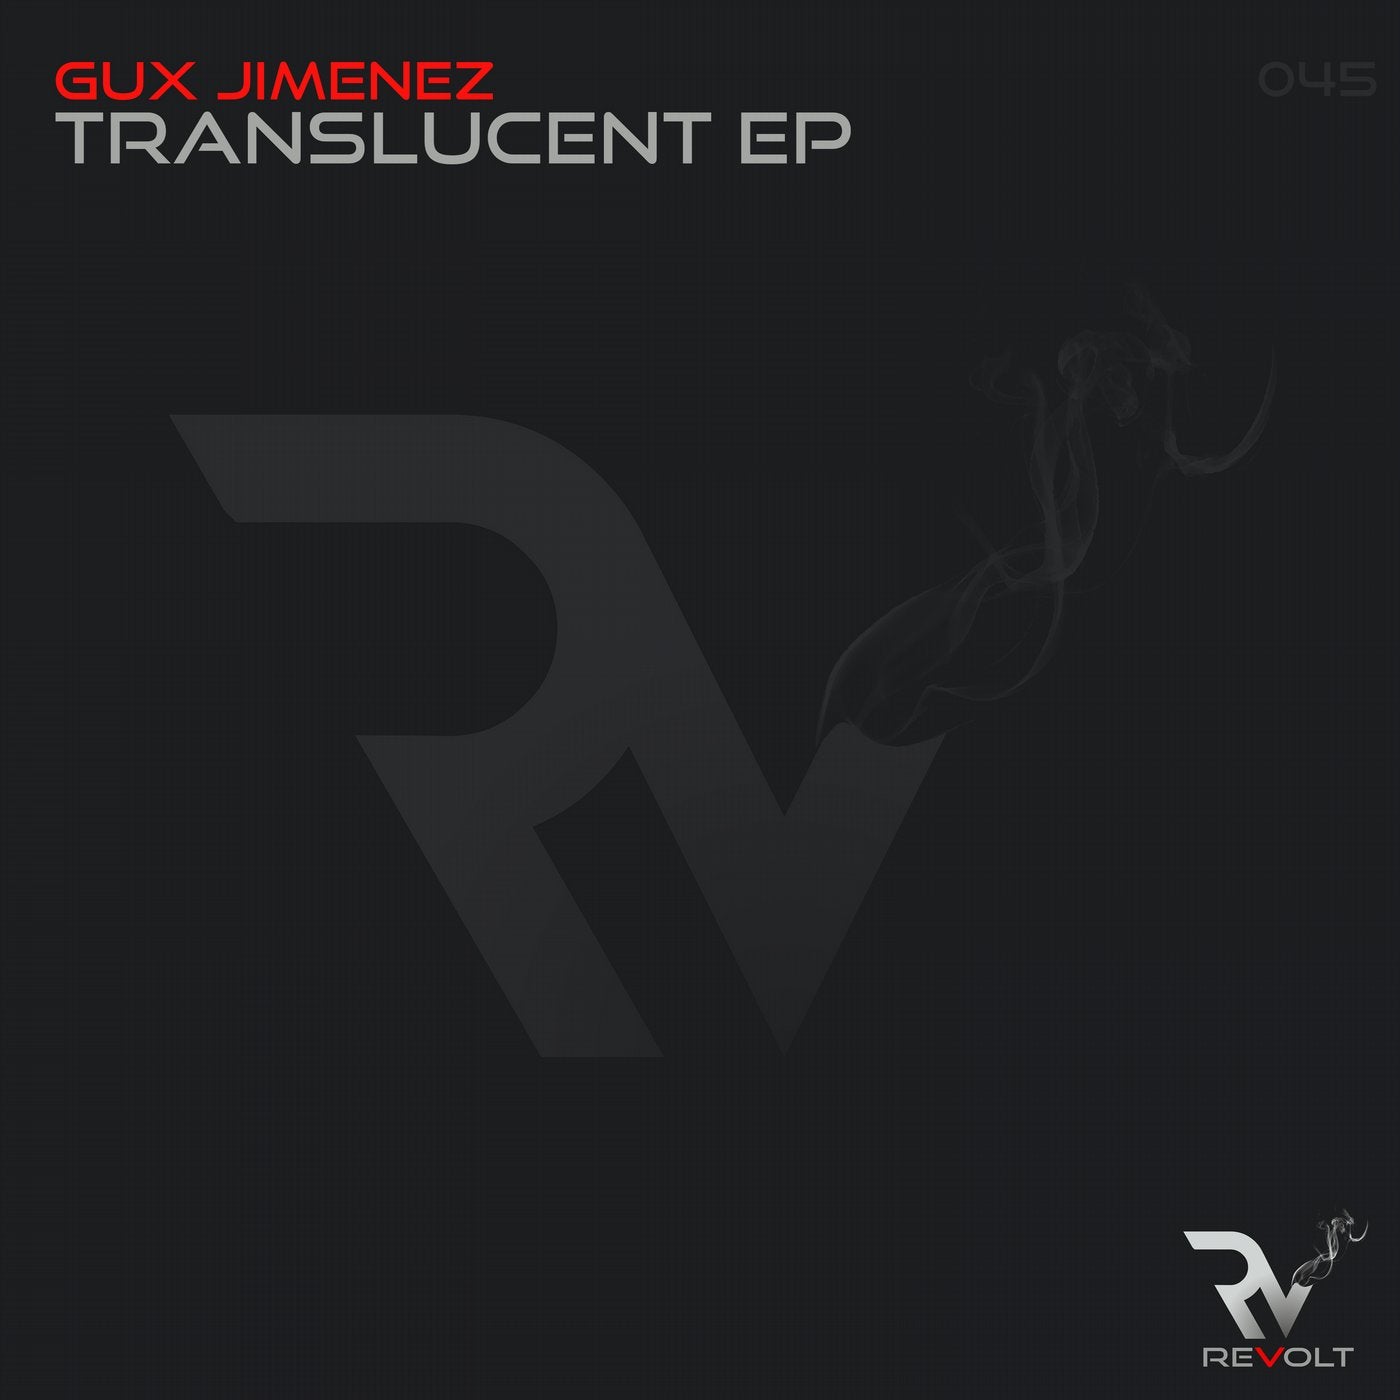 Translucent EP